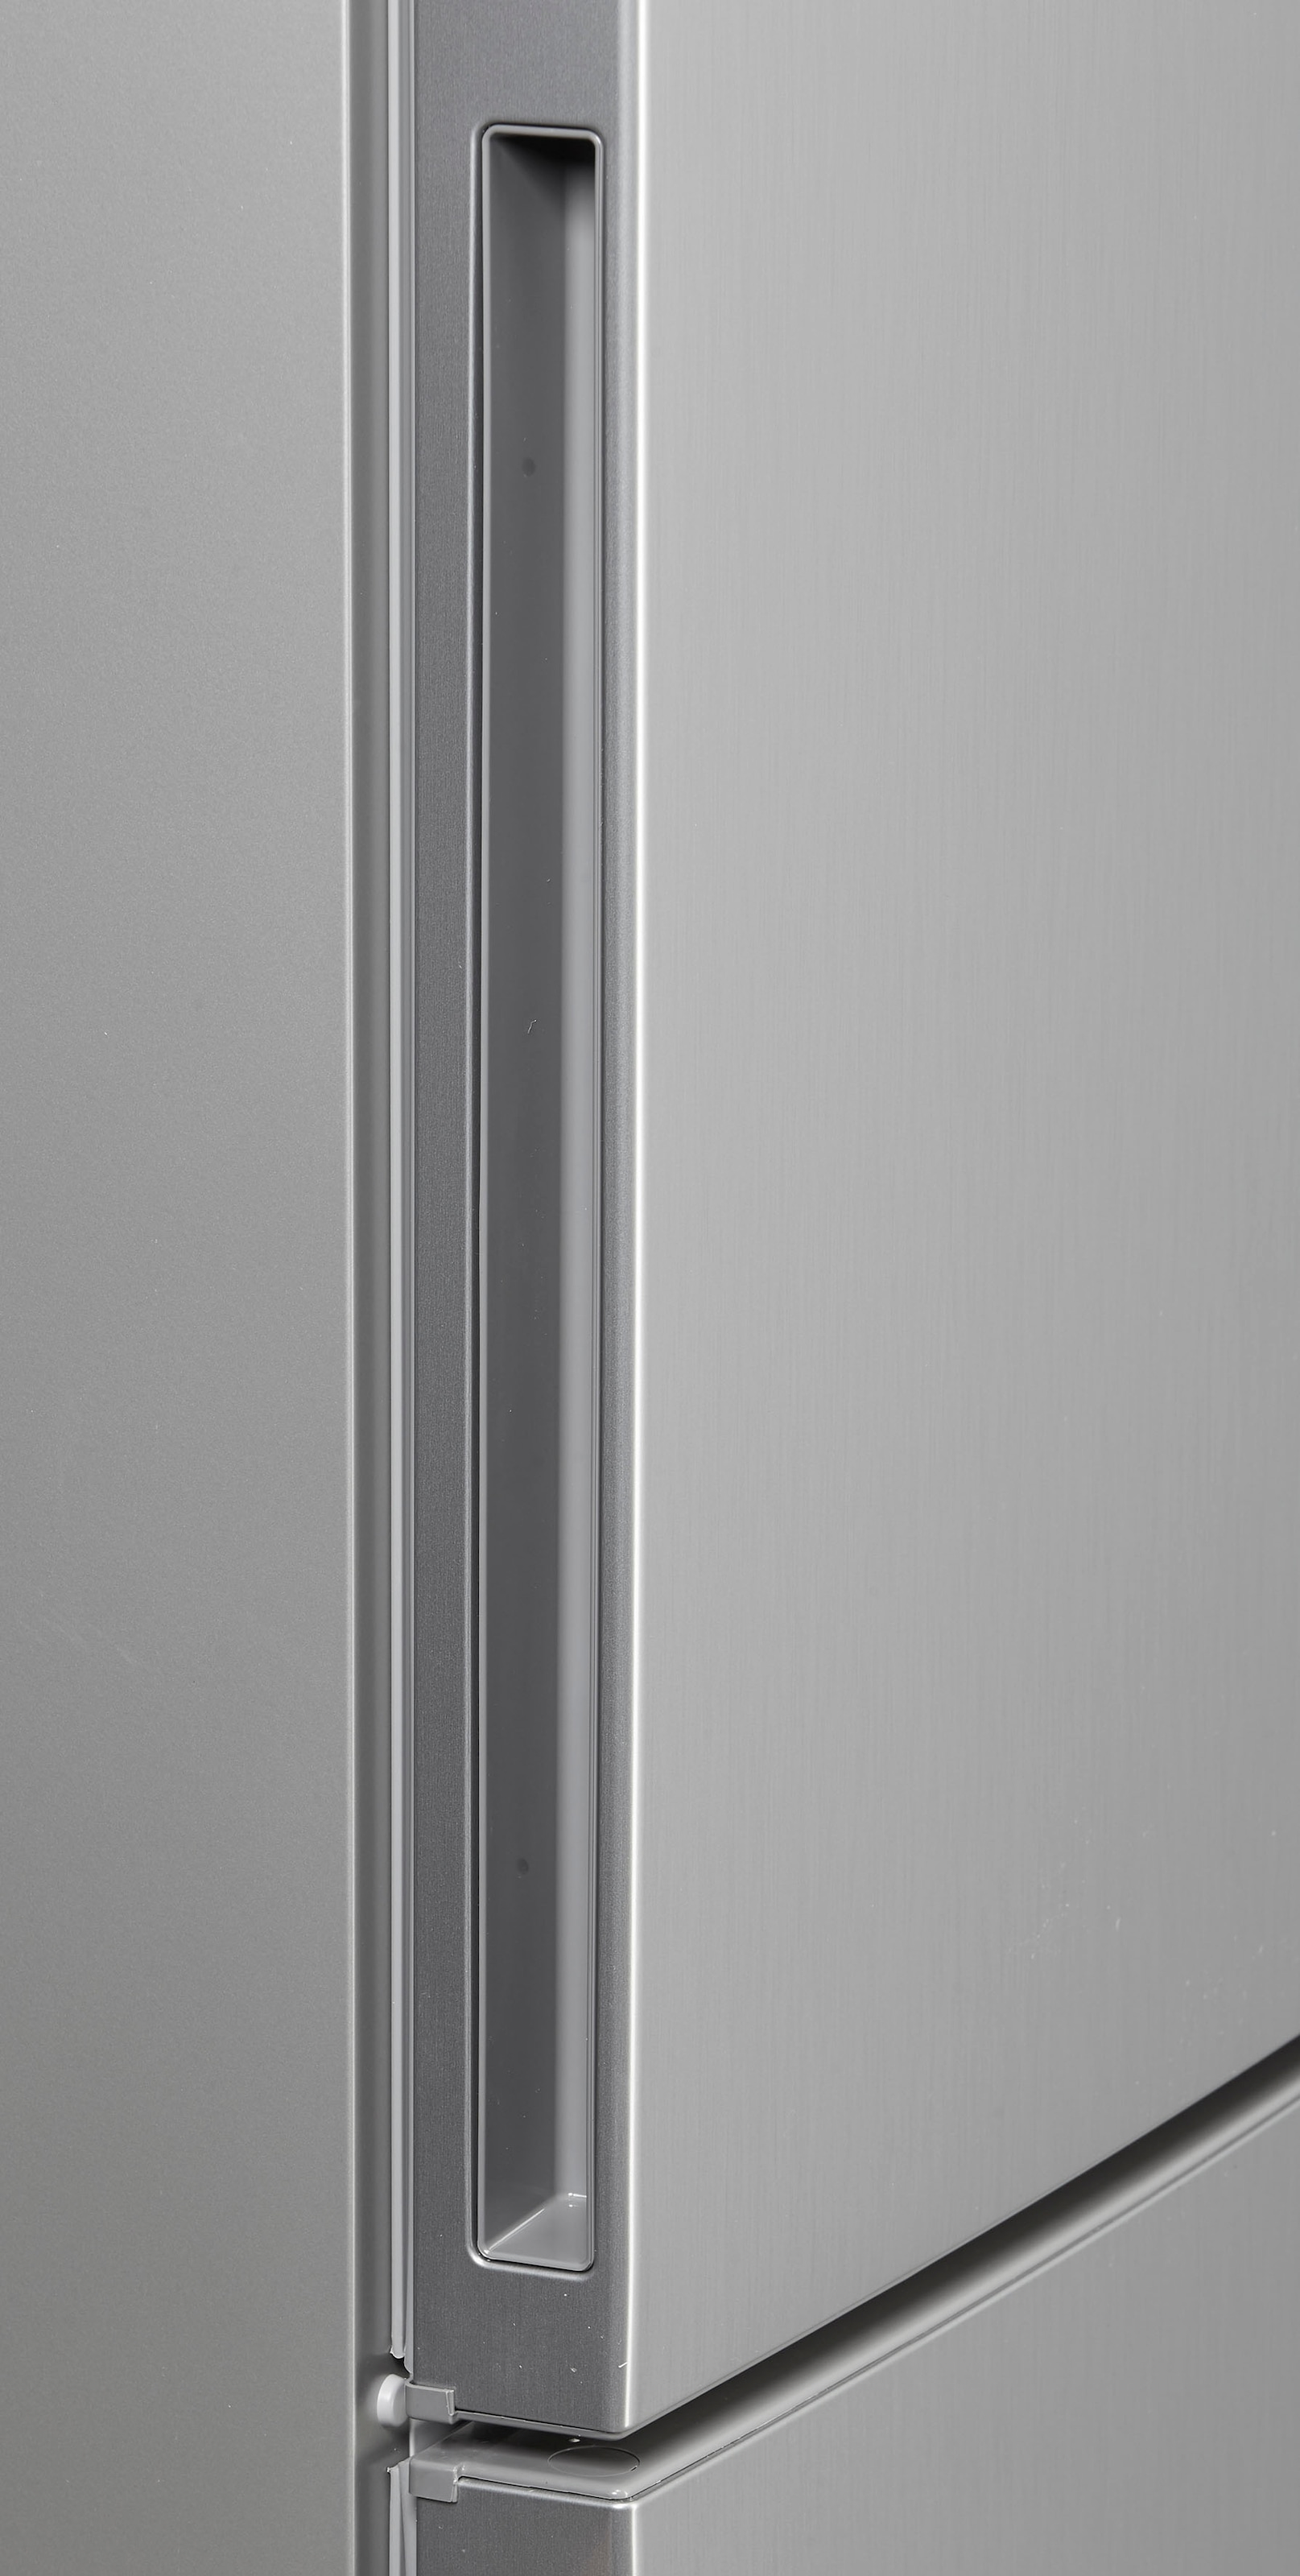 BOSCH Kühl-/Gefrierkombination, KGE36AWCA, 186 cm hoch, 60 cm breit kaufen  bei OTTO